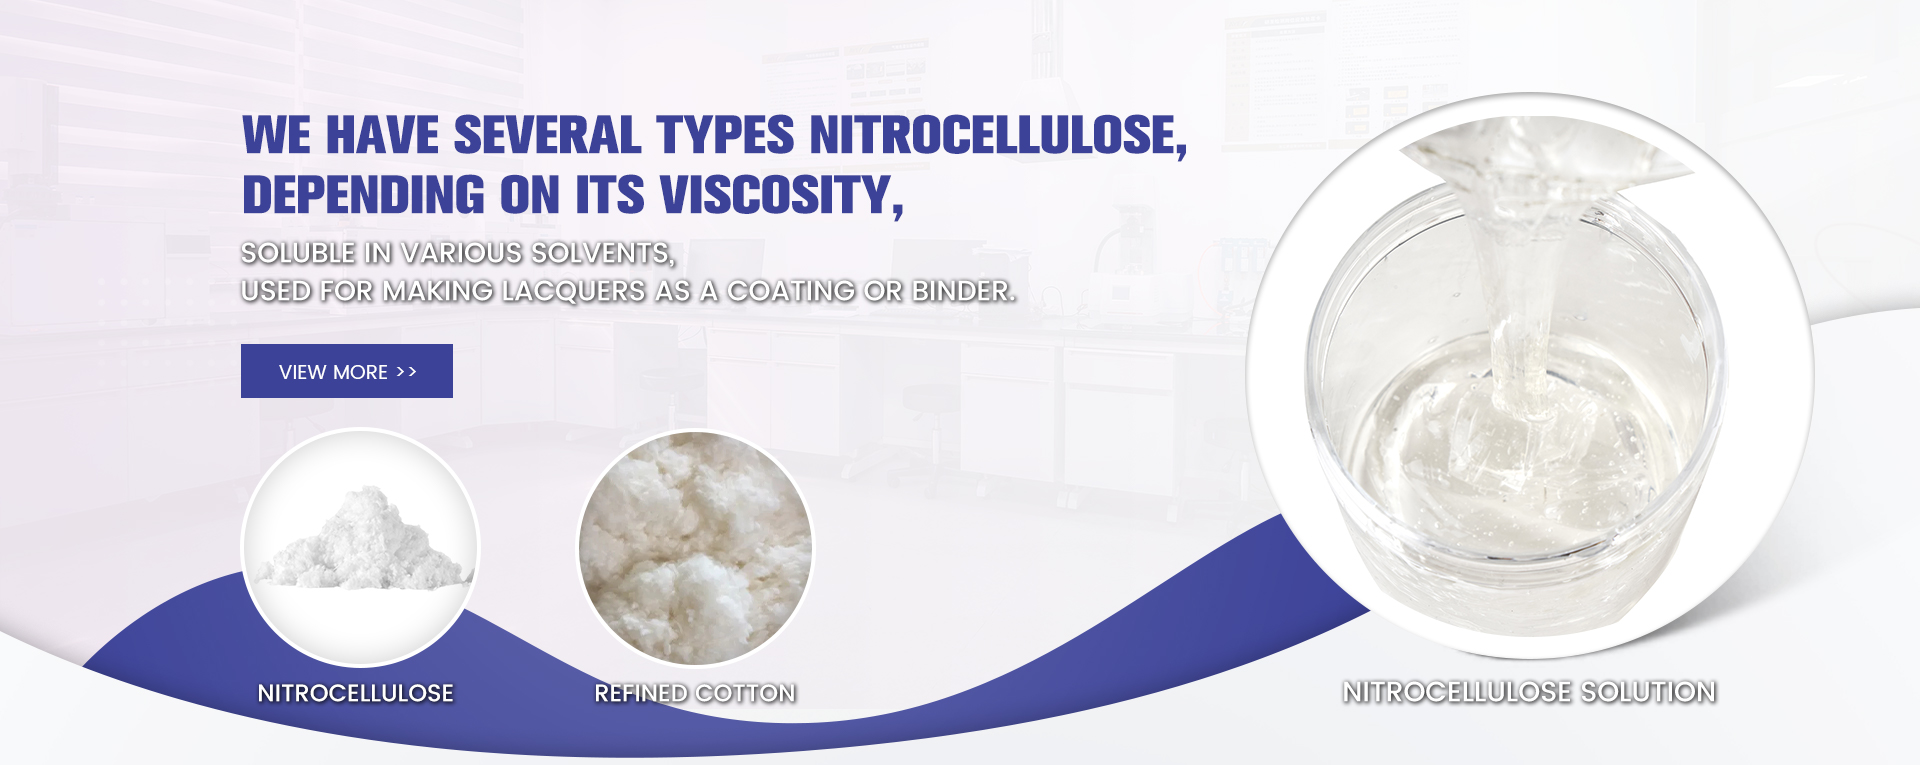 Refined Cotton, Nitrocellulose, Nitrocellulose Solution - Aibook